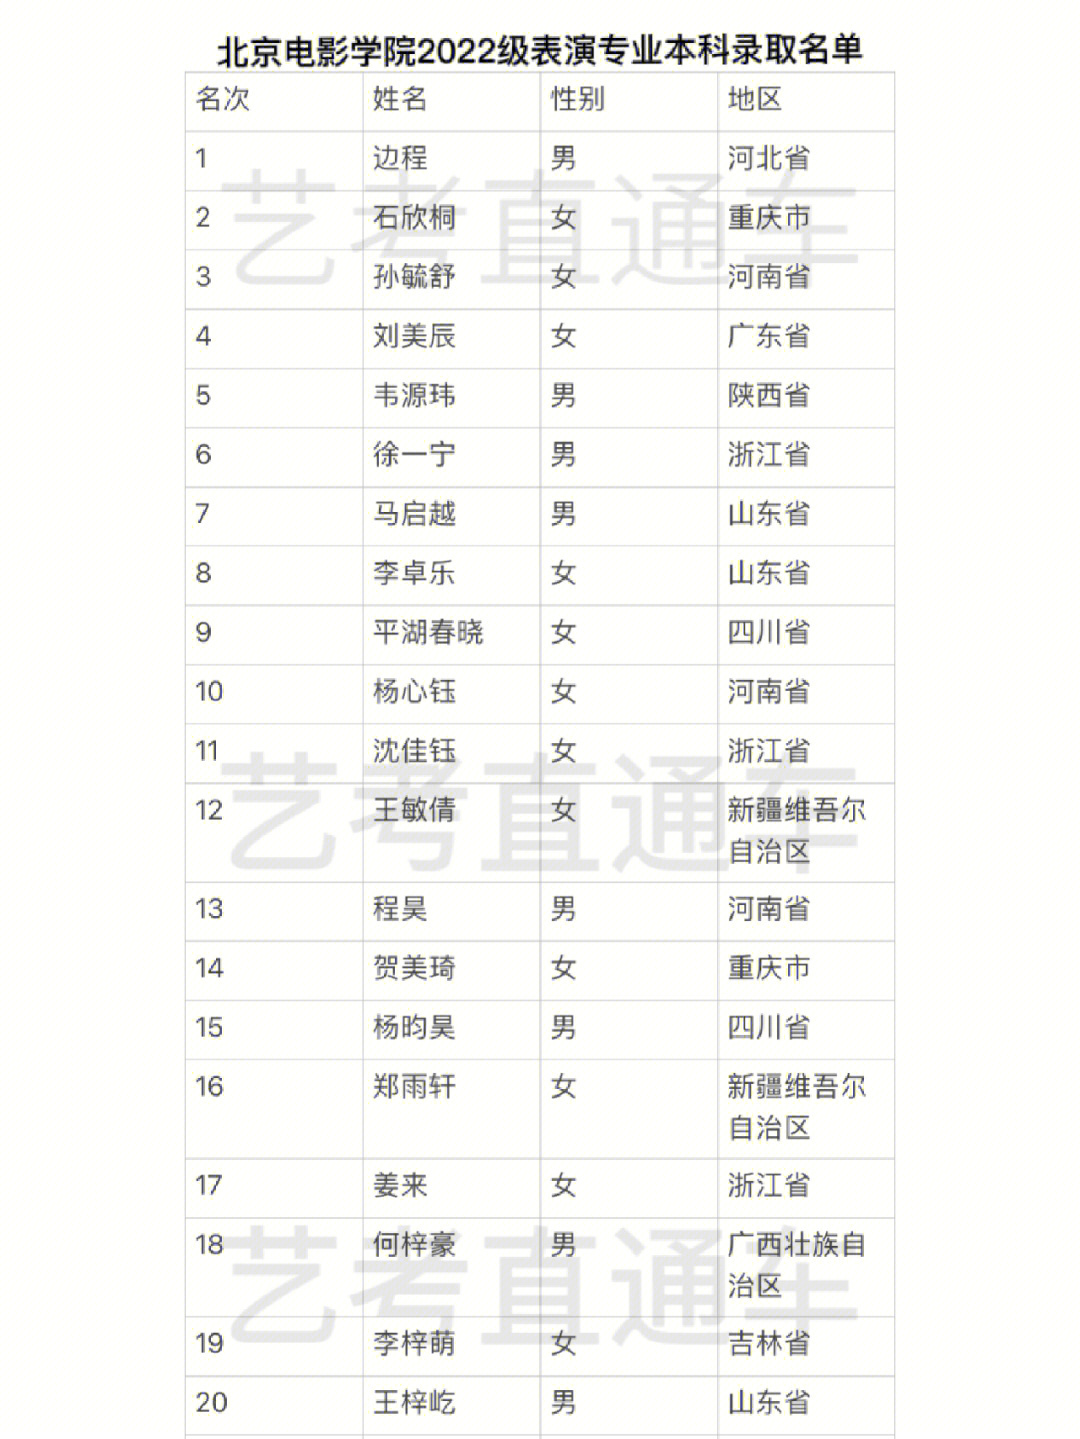 北京电影学院2022级表演专业本科录取名单